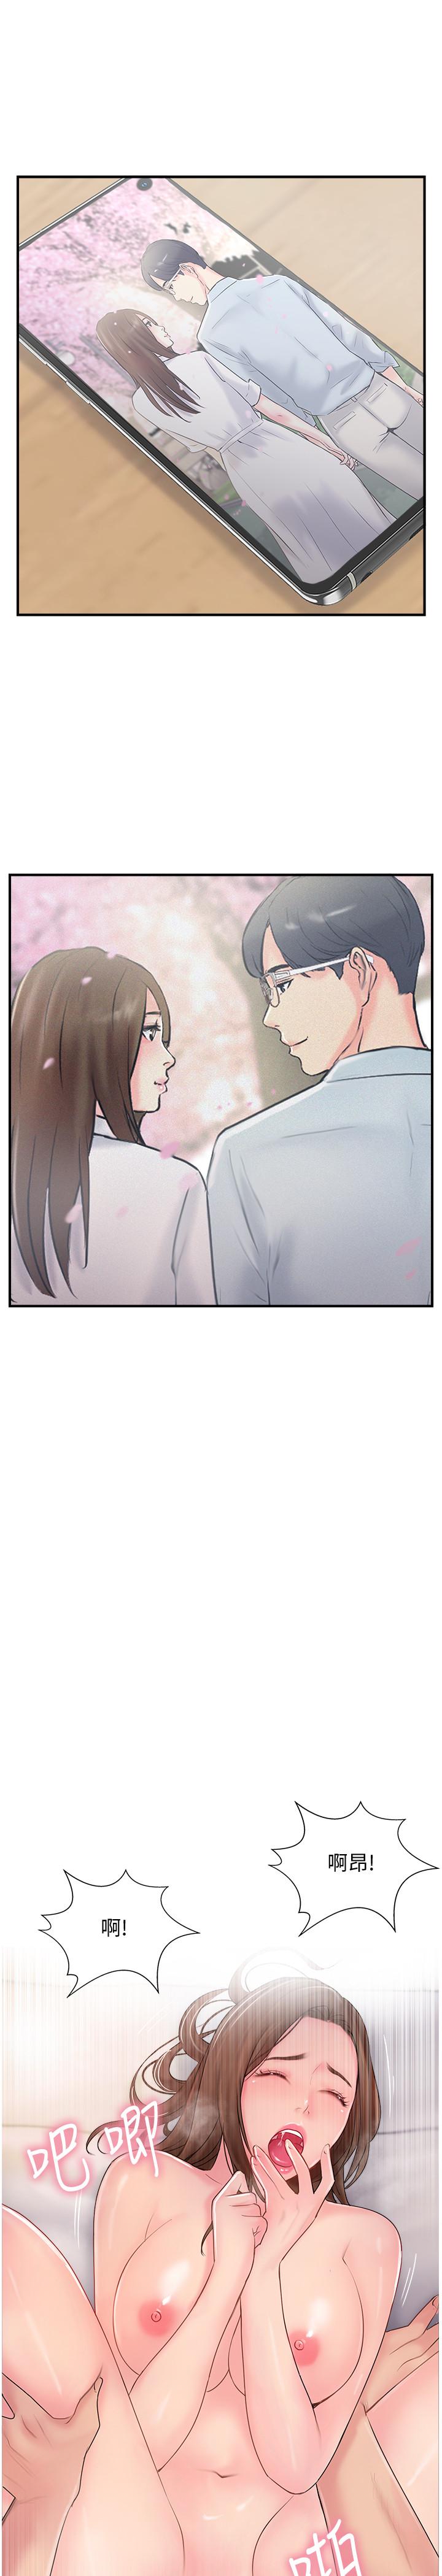 韩国污漫画 完美新伴侶 第16话-初尝偷情的快感 3